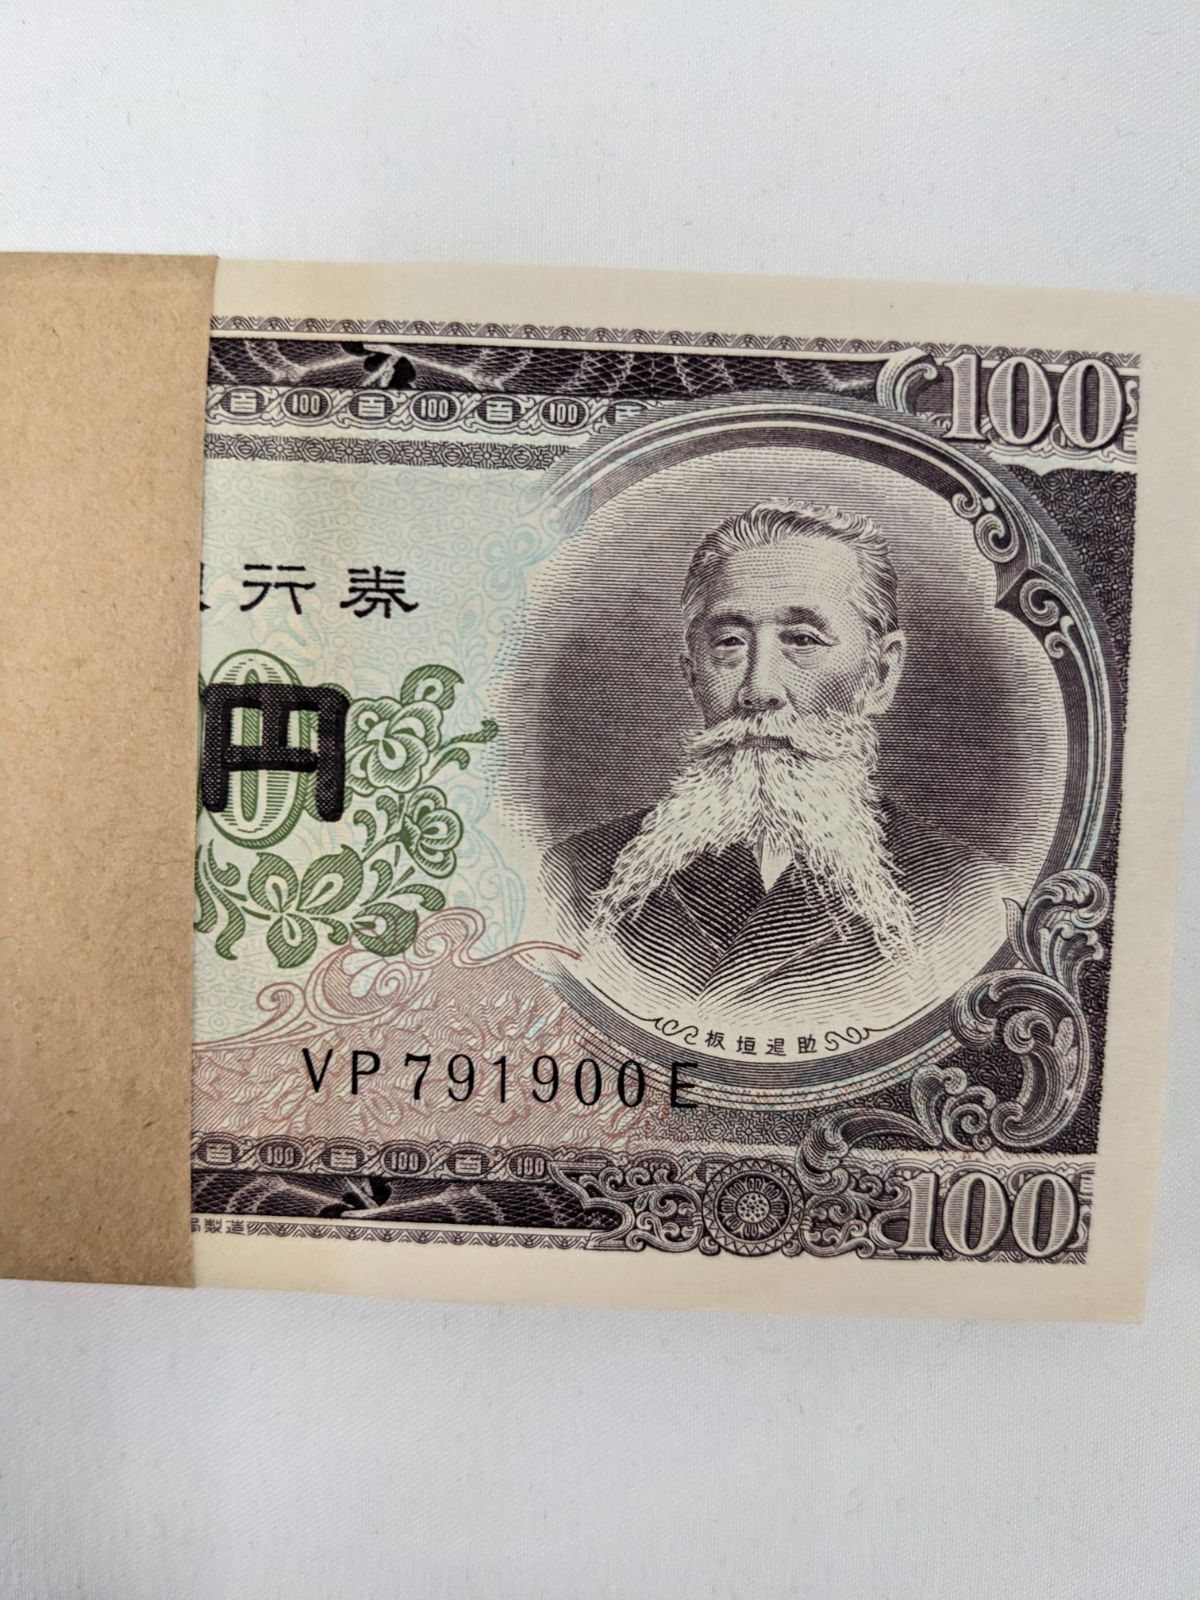 ⭐レア❗旧紙幣 古銭 板垣退助100円札 帯付き 100枚⭐ - メルカリ